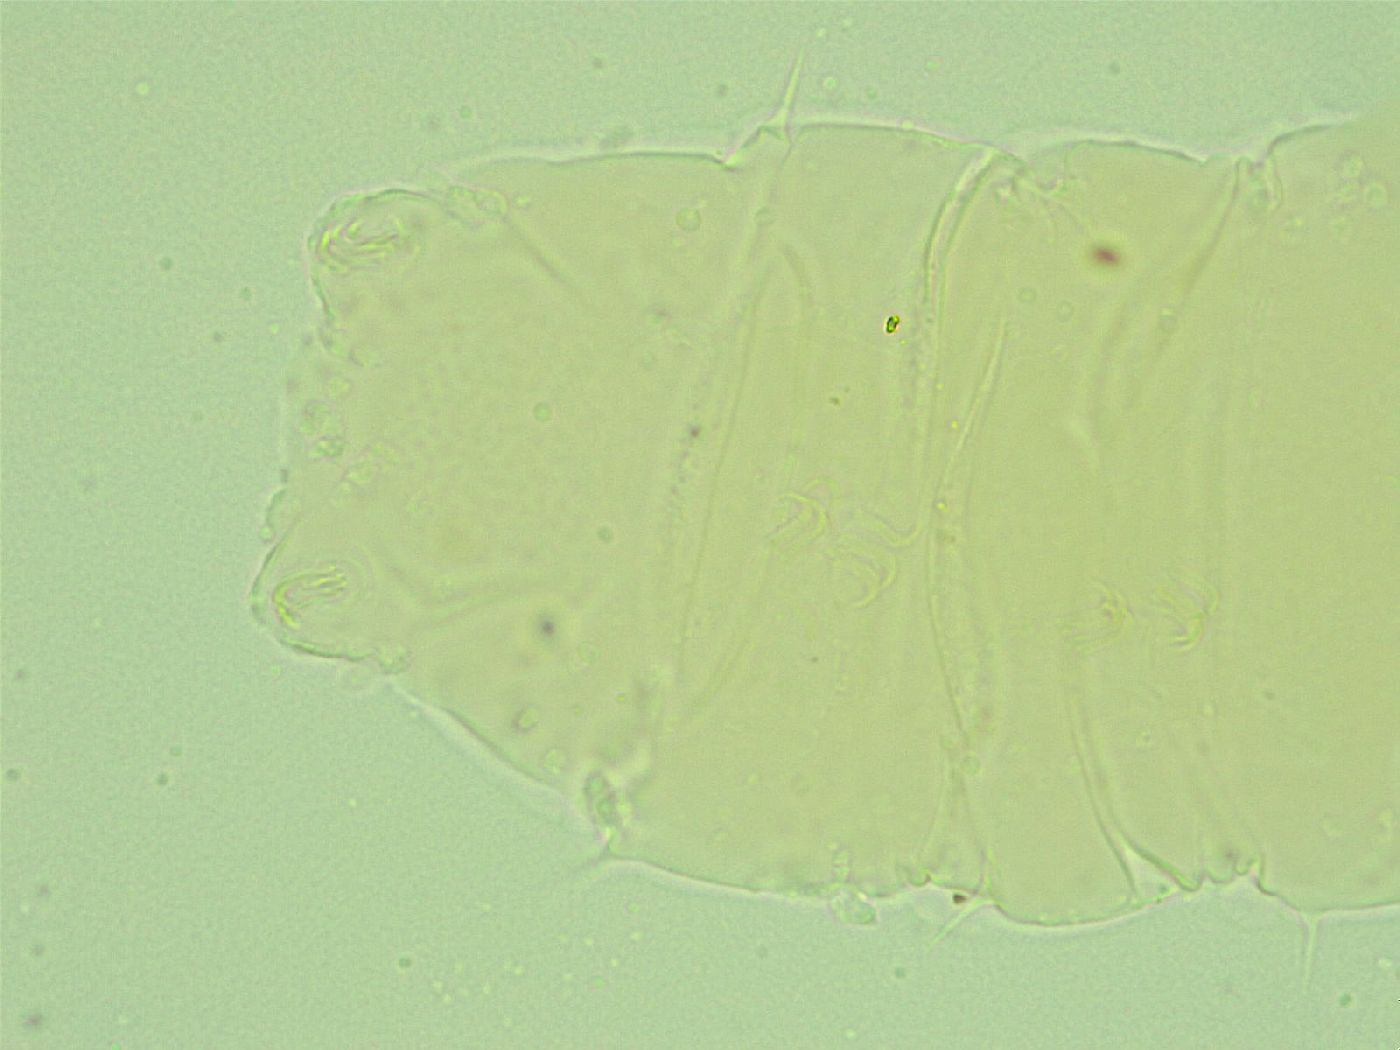 Antechiniscus image